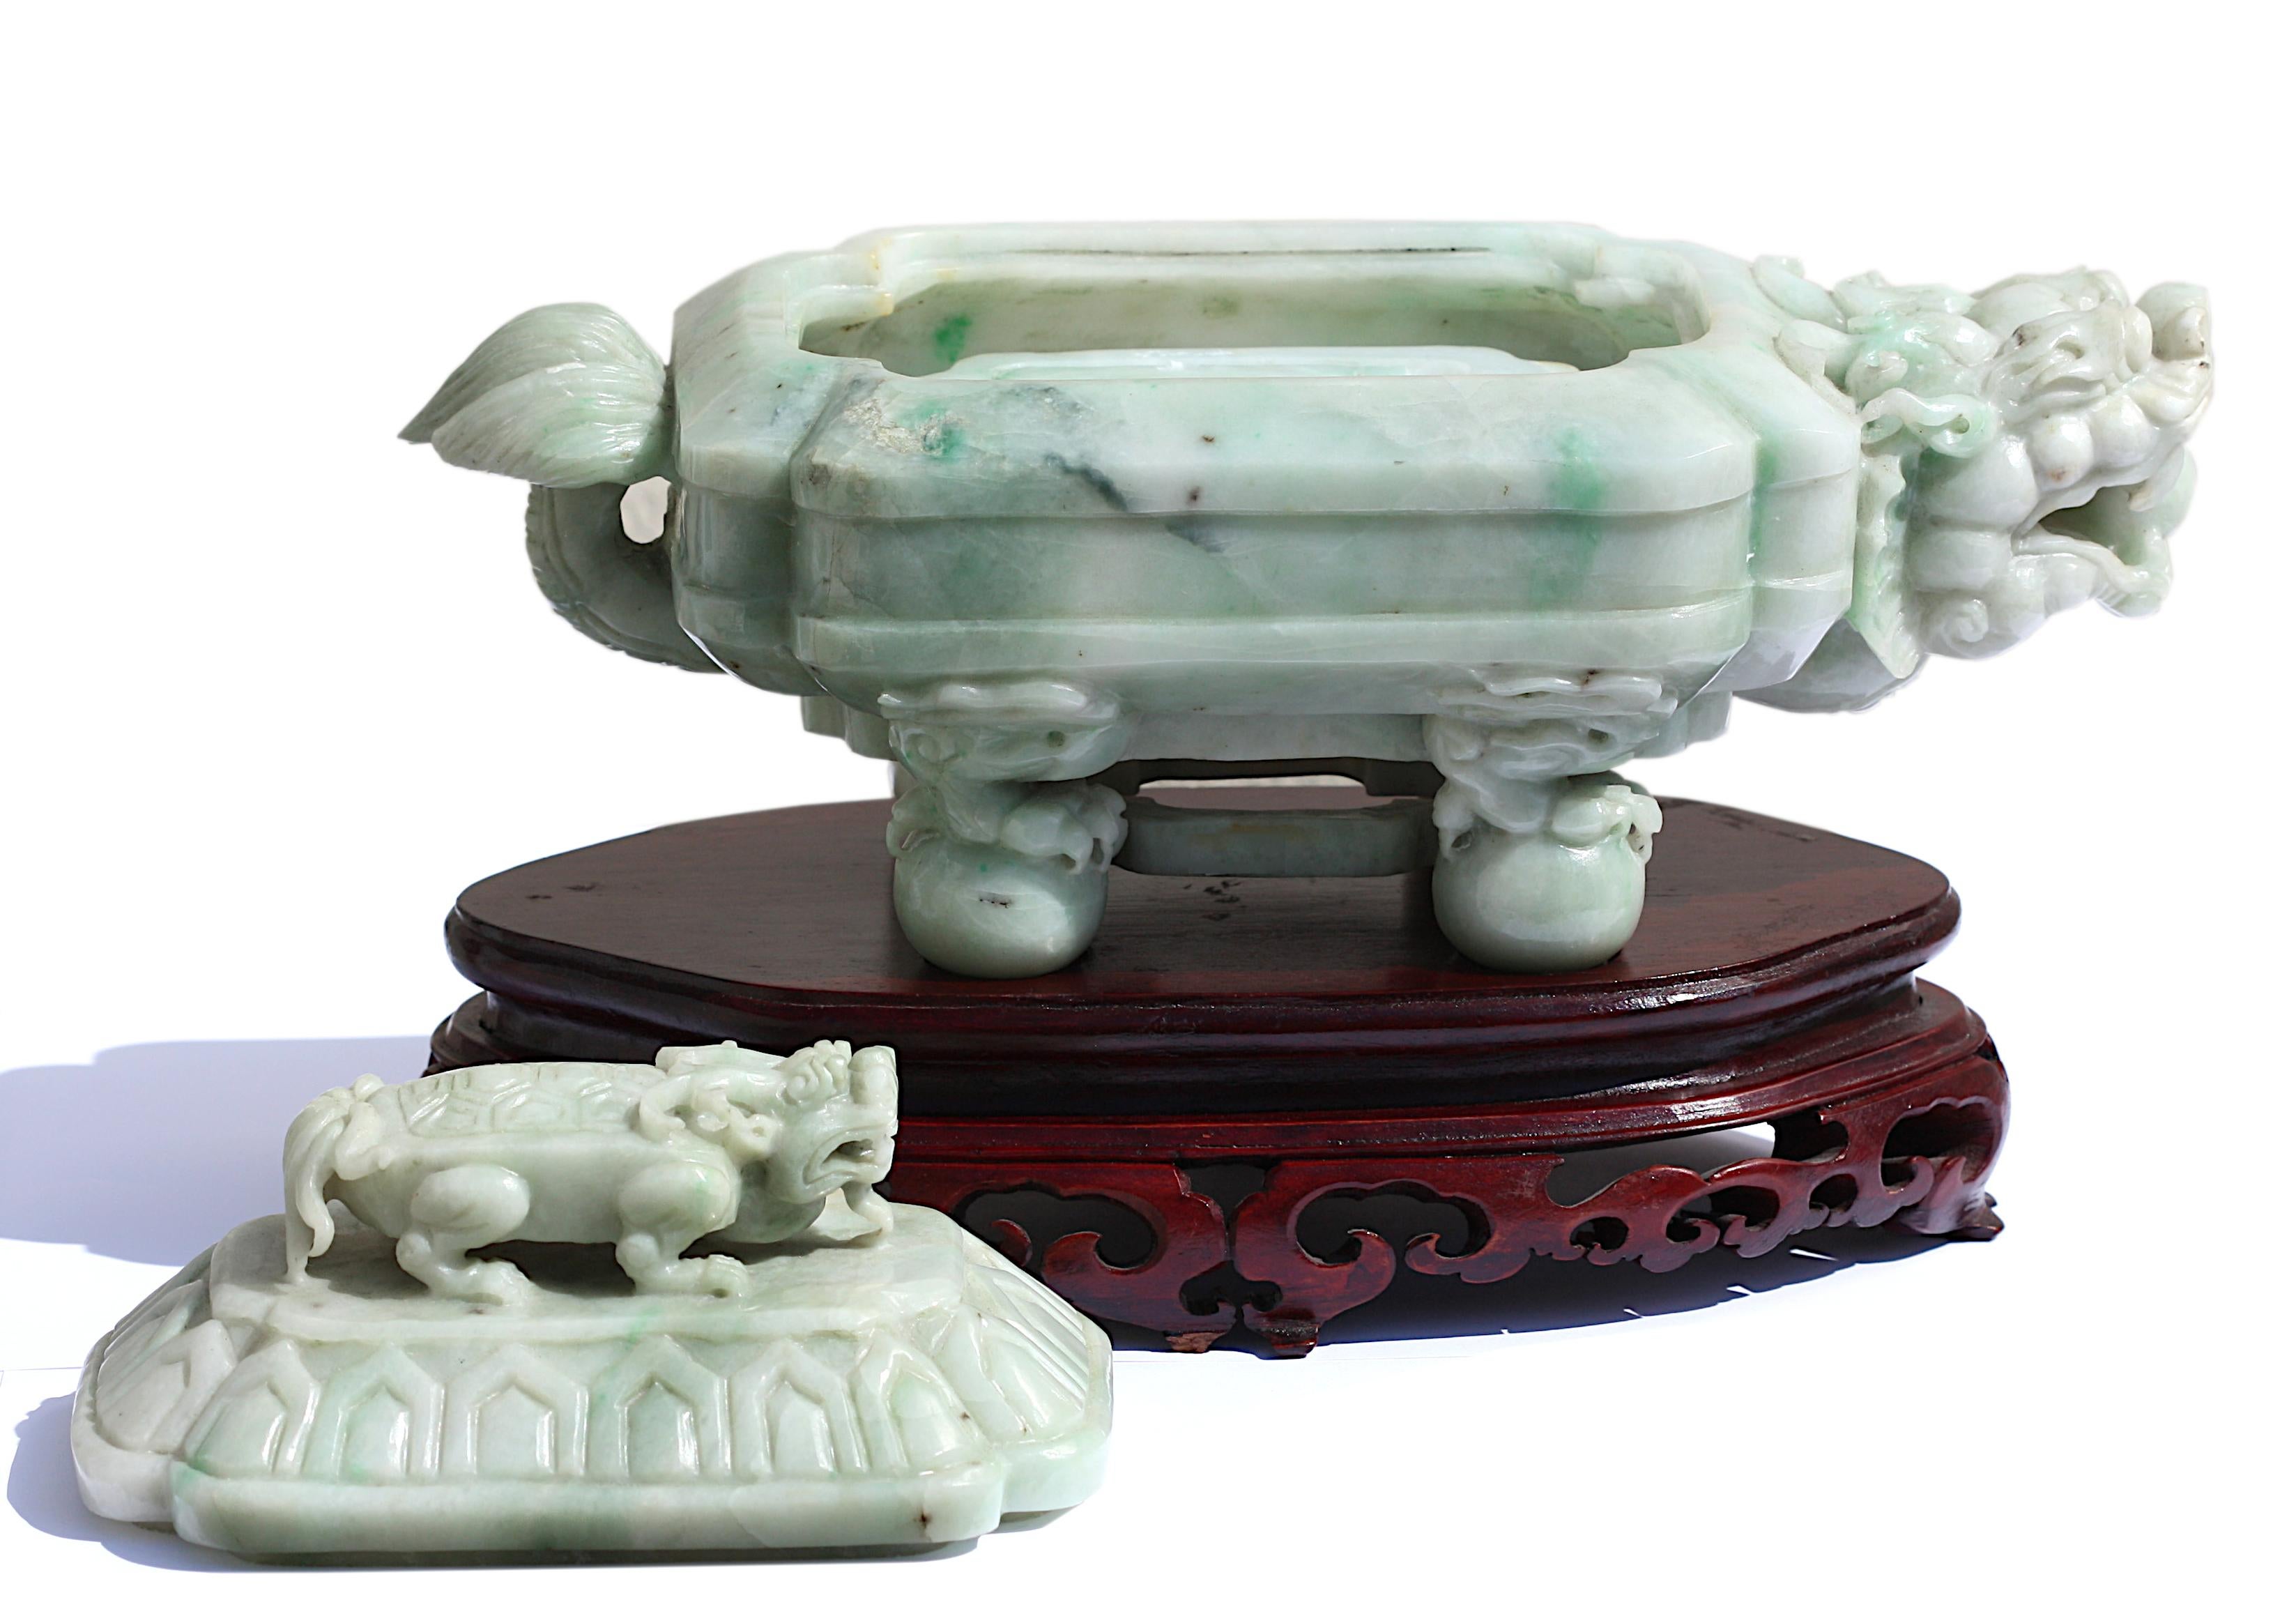 
Eine chinesische Jadeschatulle mit Deckel, geschnitzt in Form einer gehörnten mythischen Schildkröte, die auf vier Kugeln steht, der Deckel mit einer kleinen Schildkröte und einer Öffnung, die einen Tintenstein freigibt, der weich polierte Stein